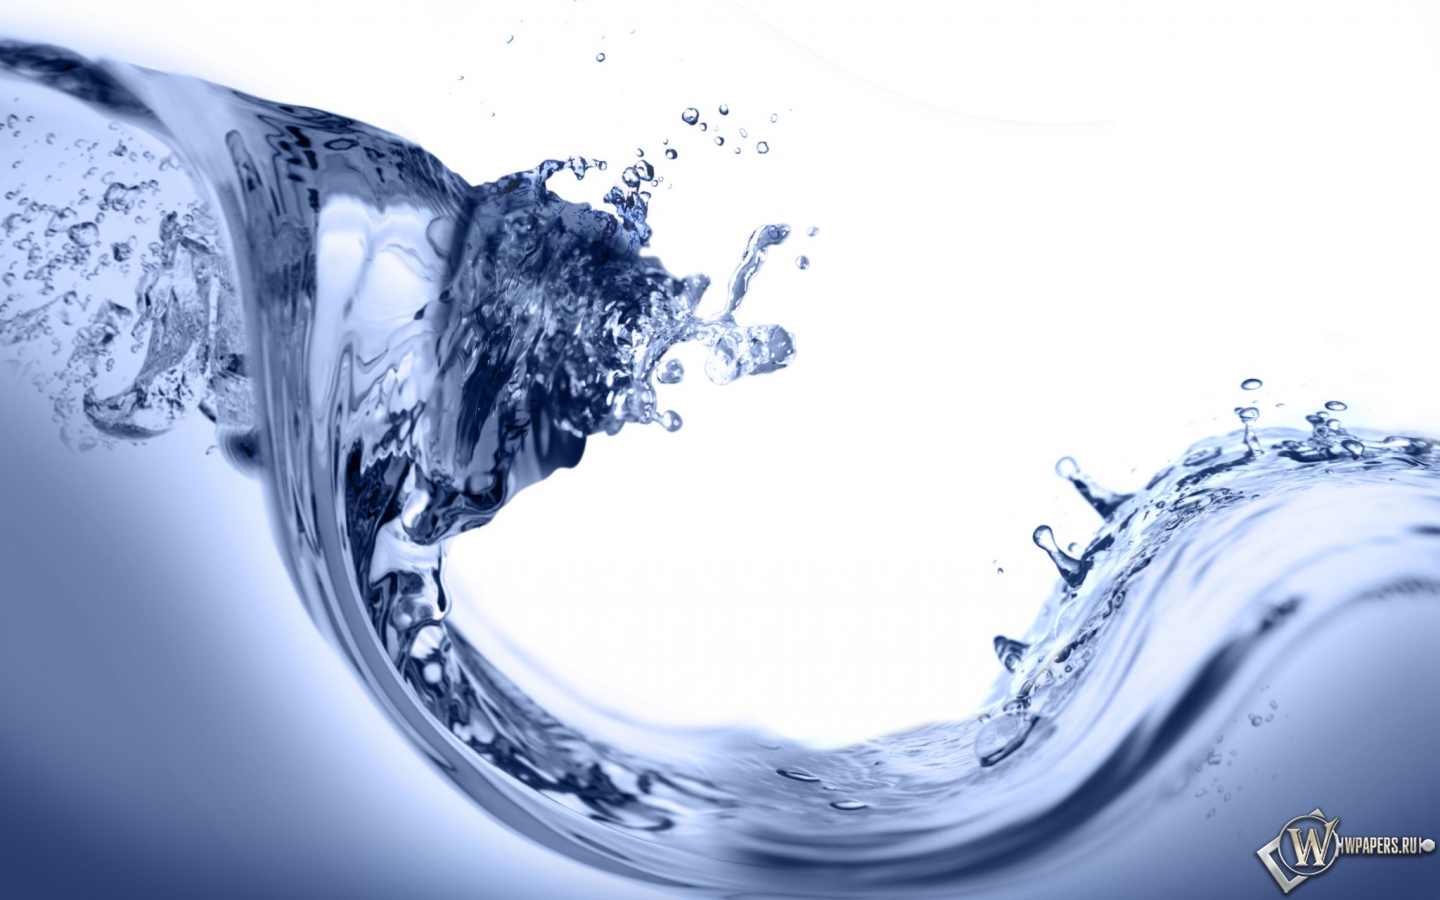 Water splashing 1440x900